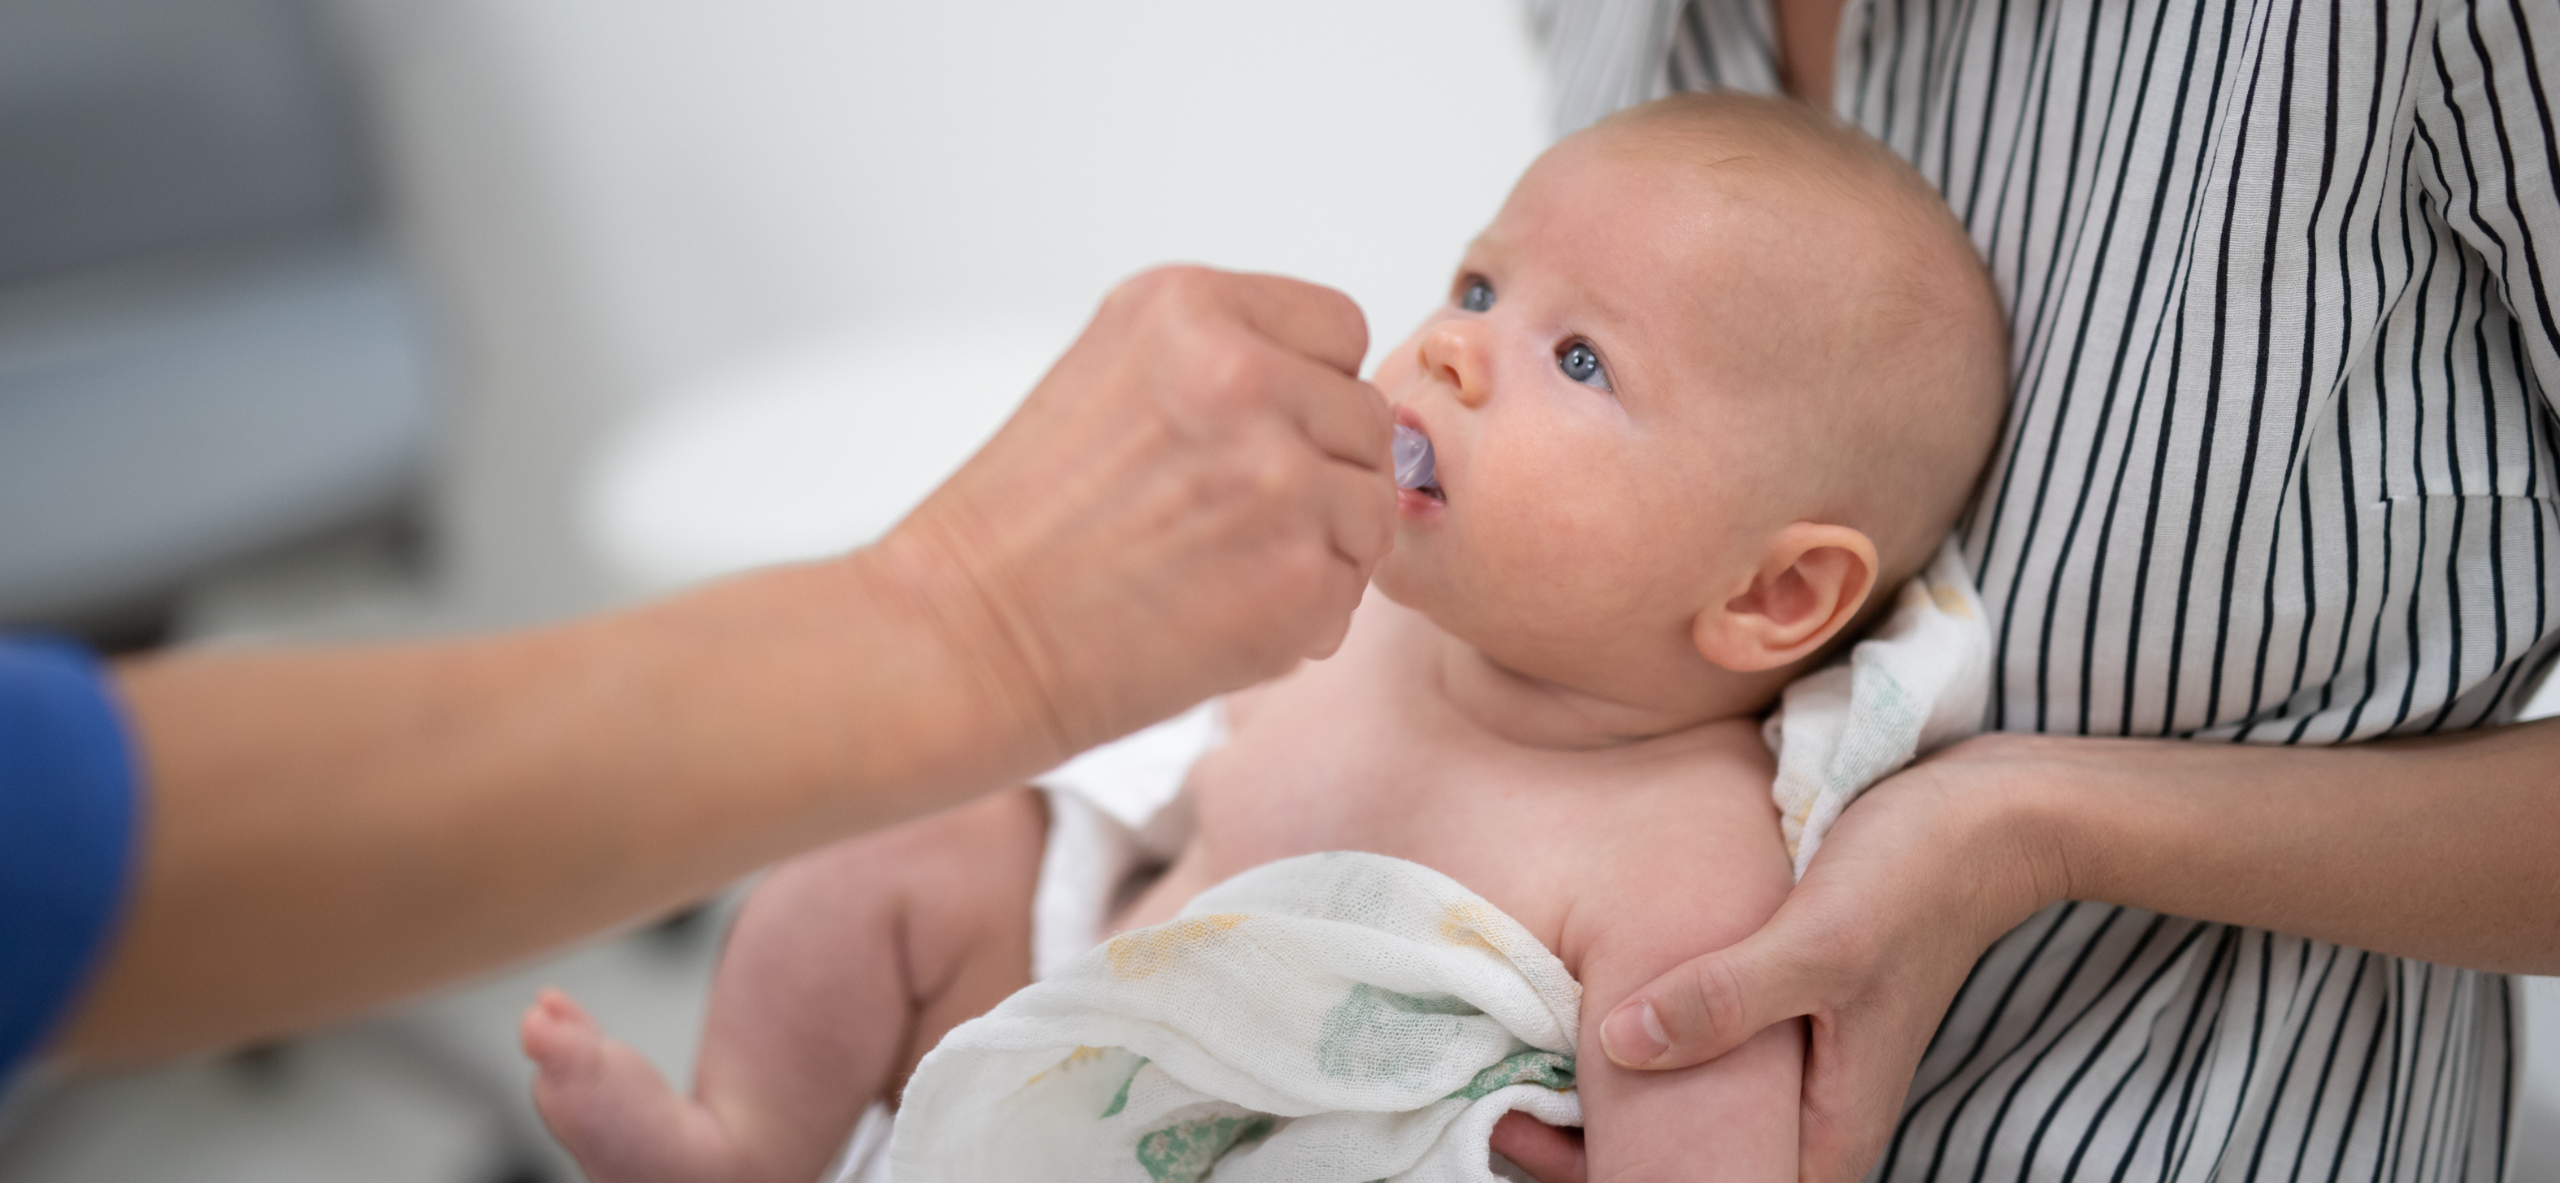 Higiene bucal en bebs: consejos para un cuidado ptimo